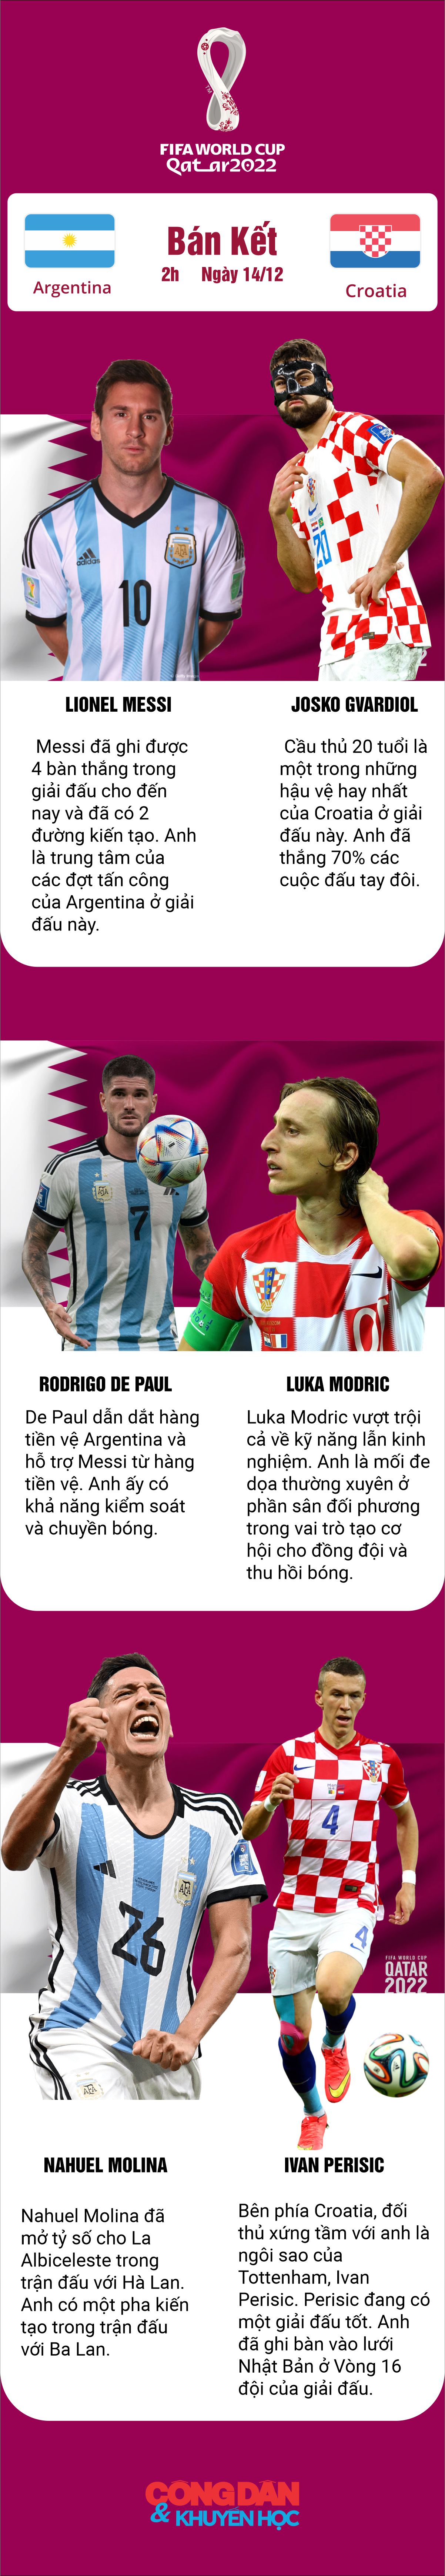 [Infographic] Argentina vs Croatia: 3 điểm nóng quyết định trận đấu - Ảnh 1.